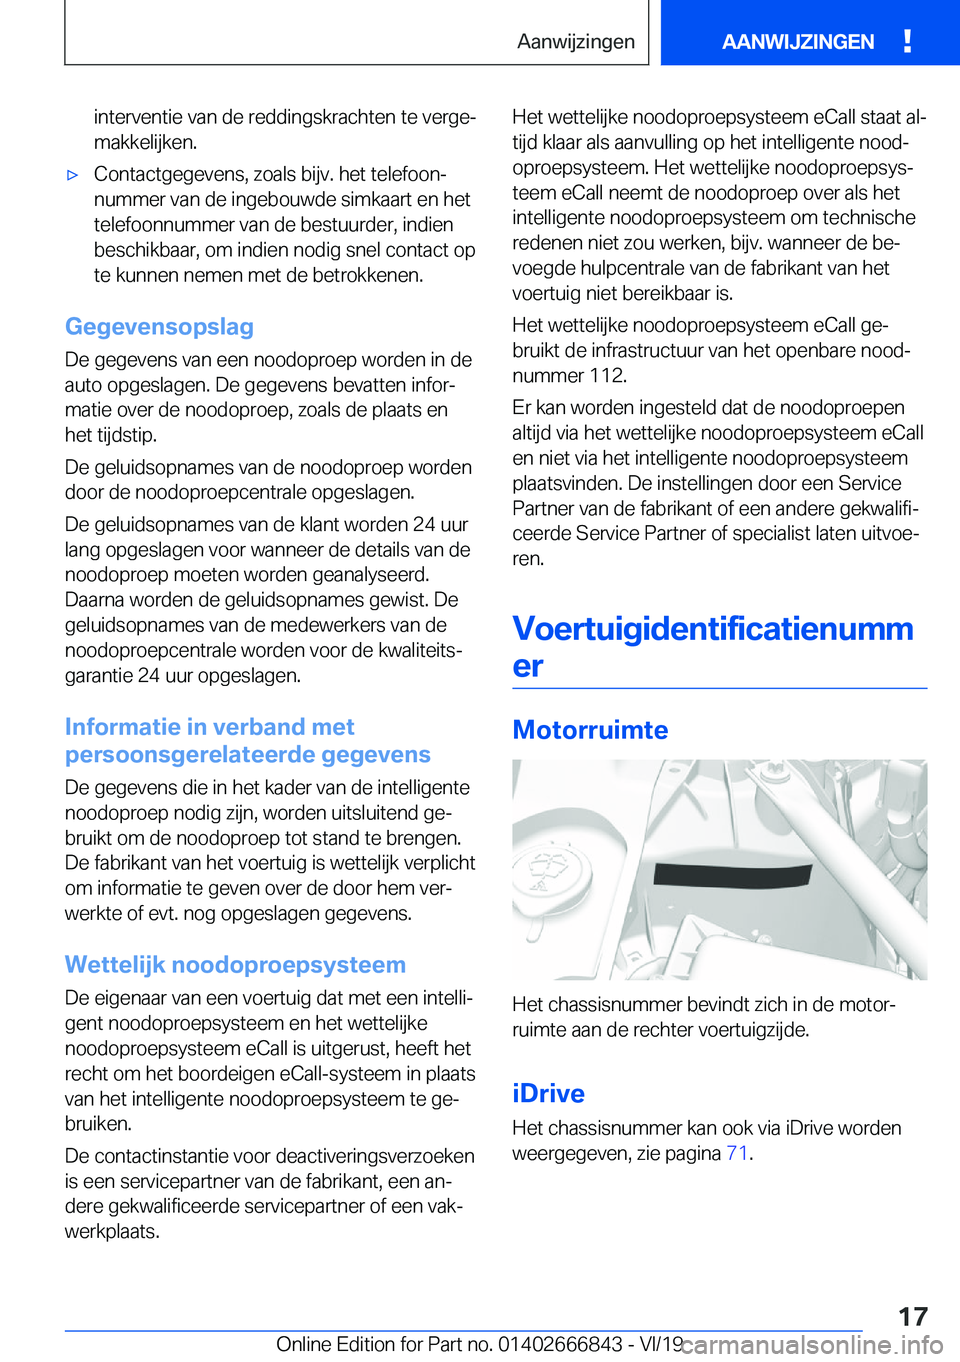 BMW X3 M 2020  Instructieboekjes (in Dutch) �i�n�t�e�r�v�e�n�t�i�e��v�a�n��d�e��r�e�d�d�i�n�g�s�k�r�a�c�h�t�e�n��t�e��v�e�r�g�ej
�m�a�k�k�e�l�i�j�k�e�n�.'x�C�o�n�t�a�c�t�g�e�g�e�v�e�n�s�,��z�o�a�l�s��b�i�j�v�.��h�e�t��t�e�l�e�f�o�